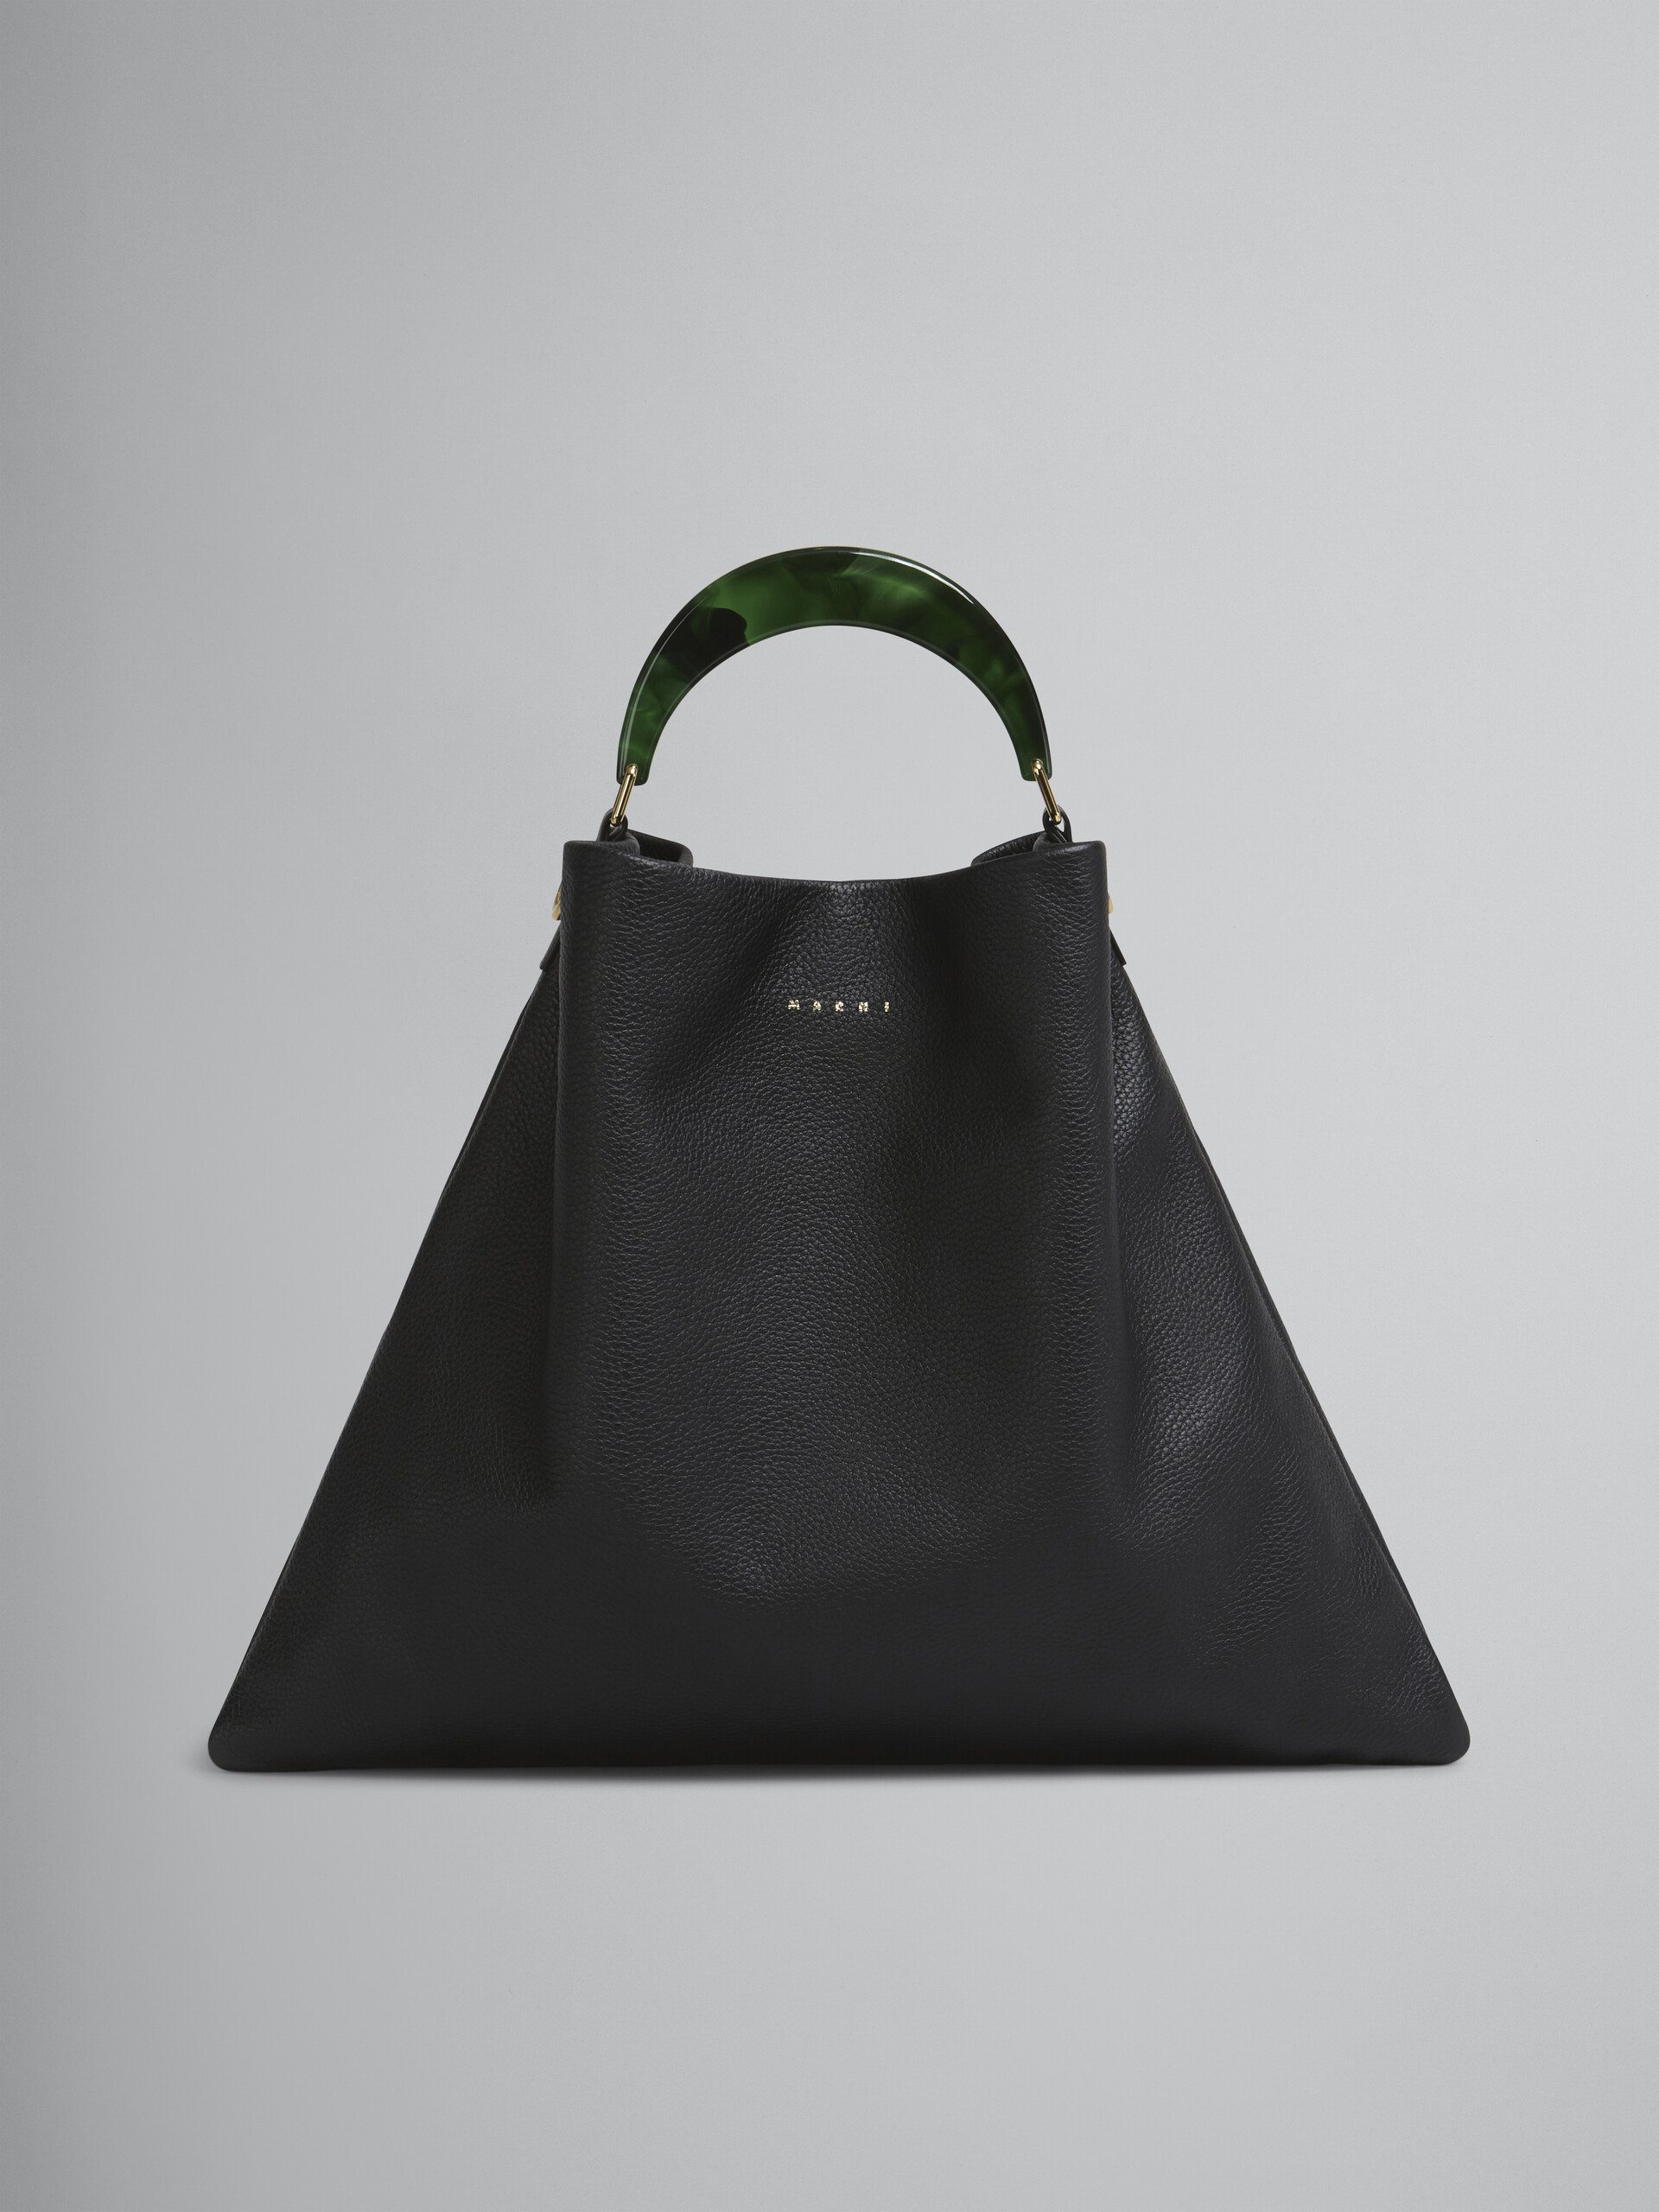 Venice Medium Bag in black leather - Shoulder Bags - Image 1